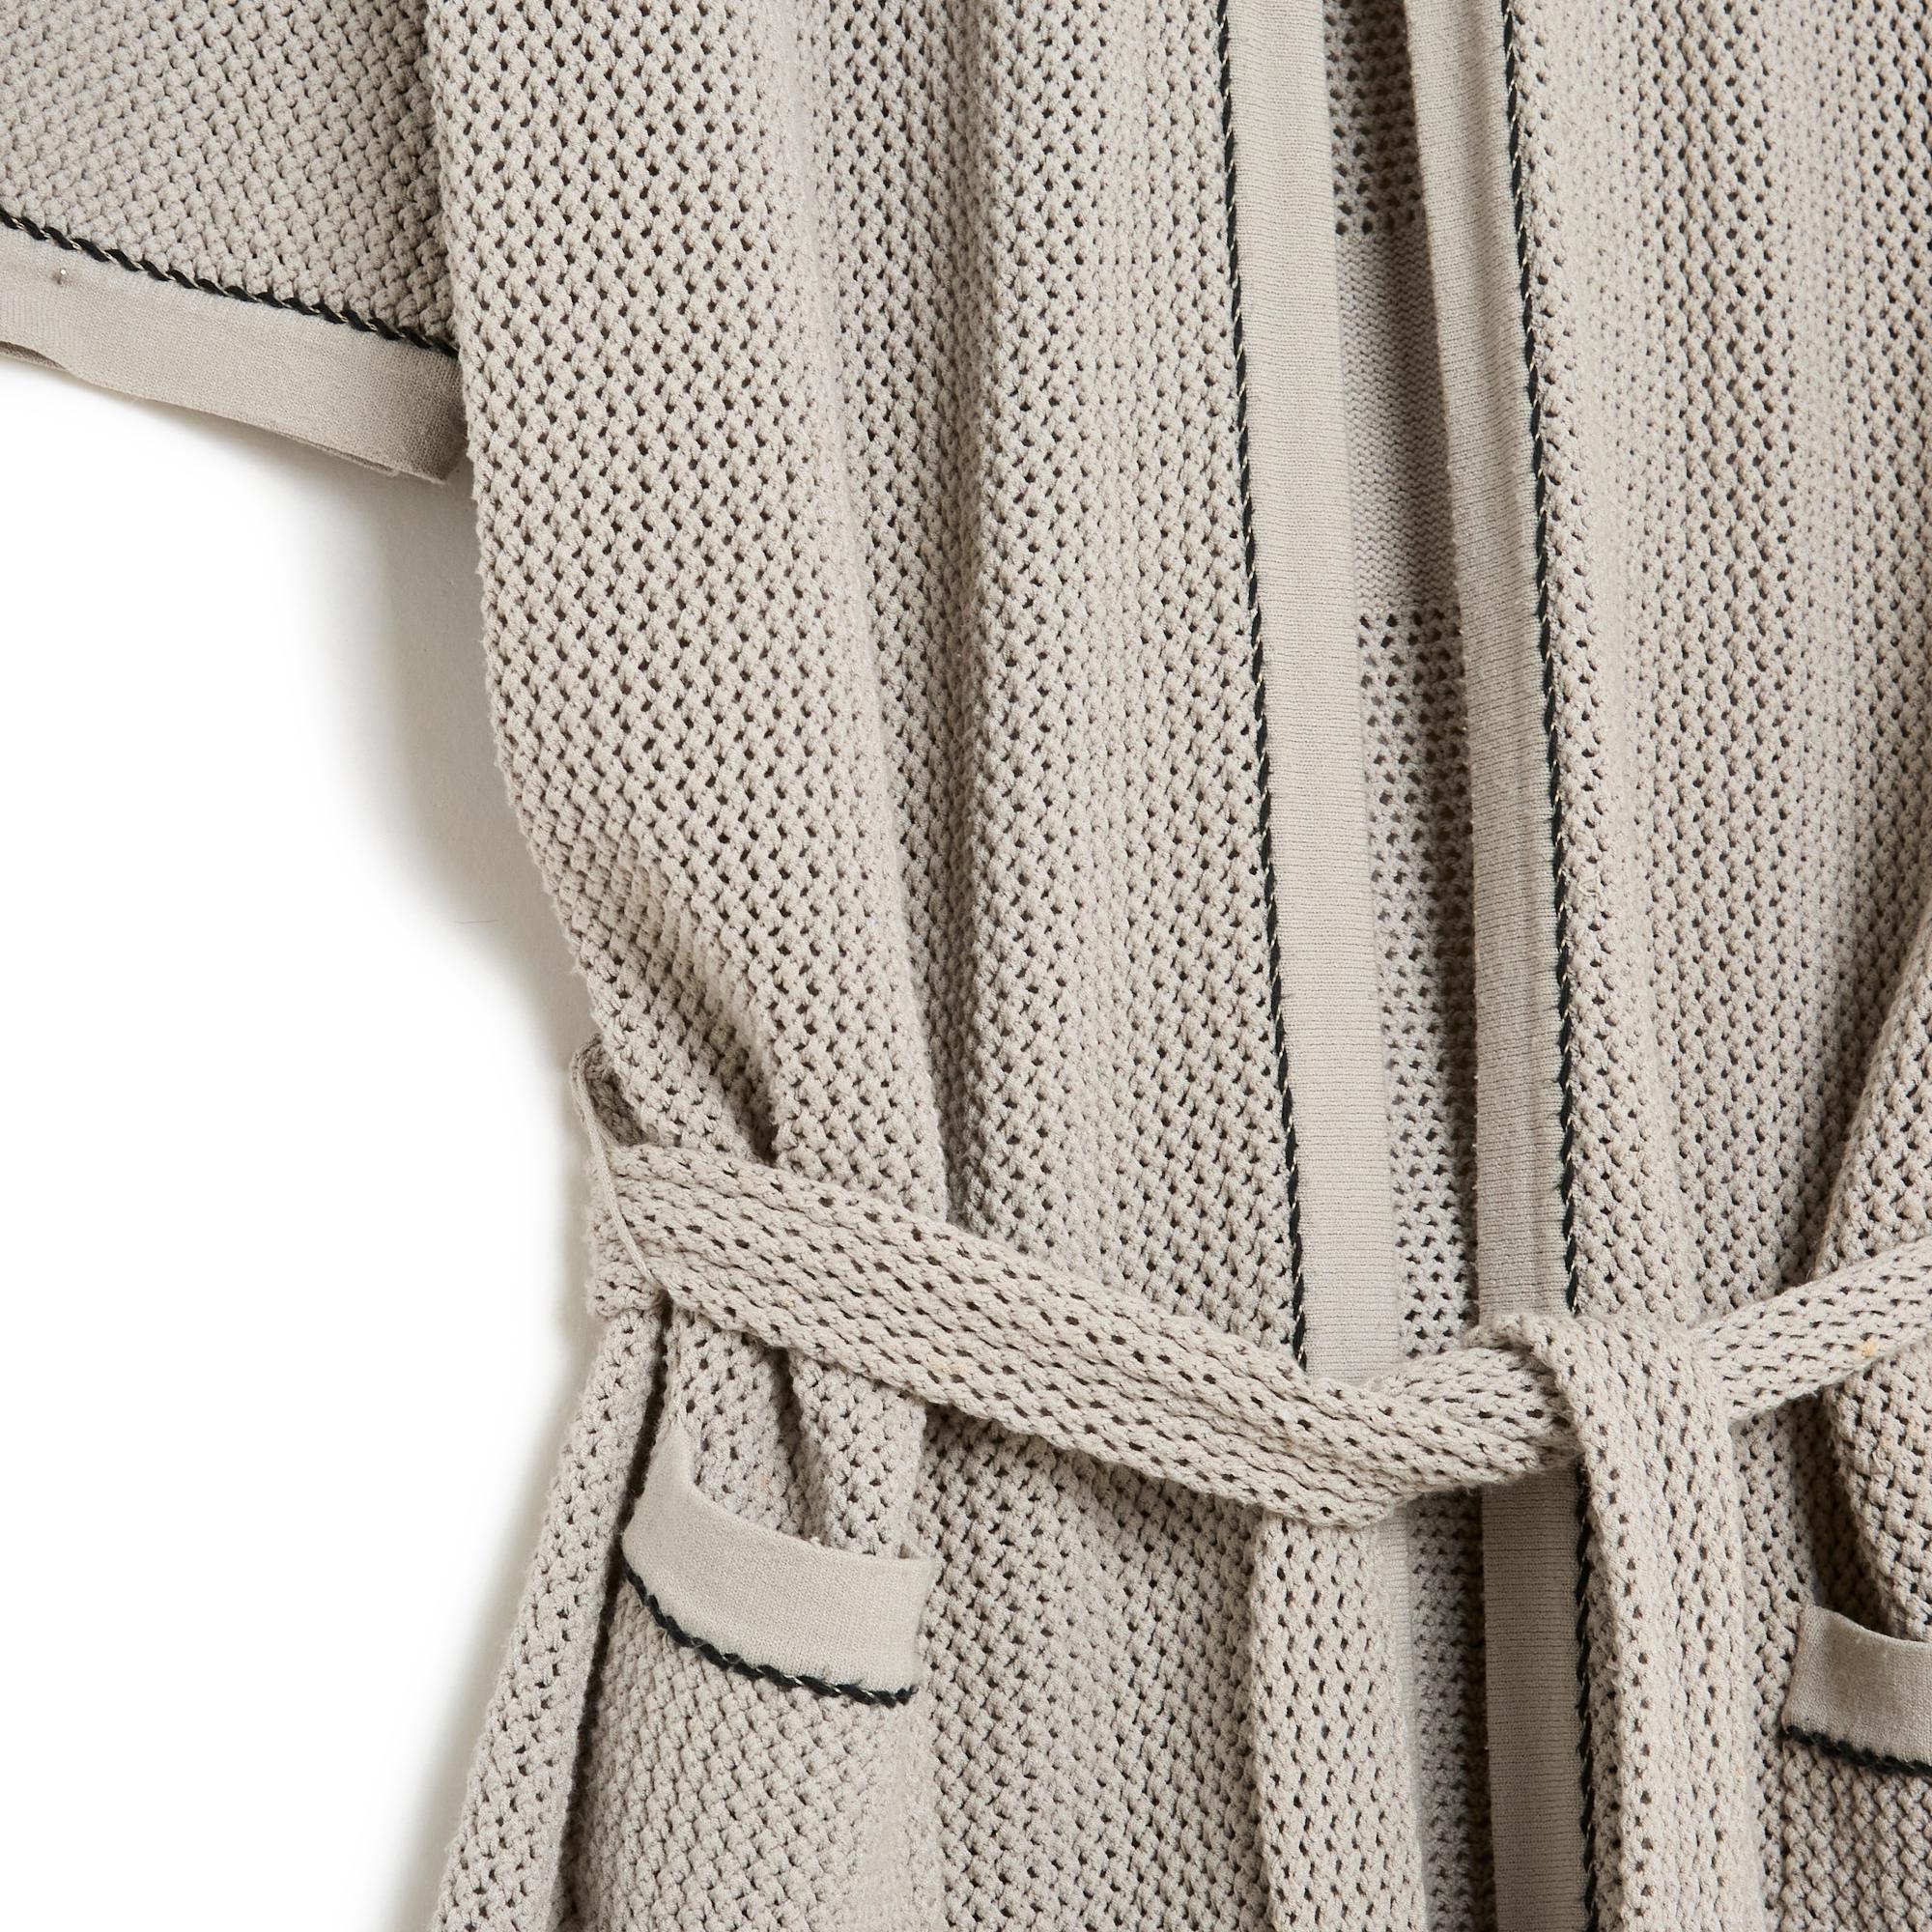 Veste longue Chanel de la collection Croisière 2009 ou cardigan ceinturé en maille viscose beige taupe orné d'un liseré noir et d'un large motif CC en médaillon dans le dos, col rond, manches 2/3, fermé par une ceinture assortie sur passants , non